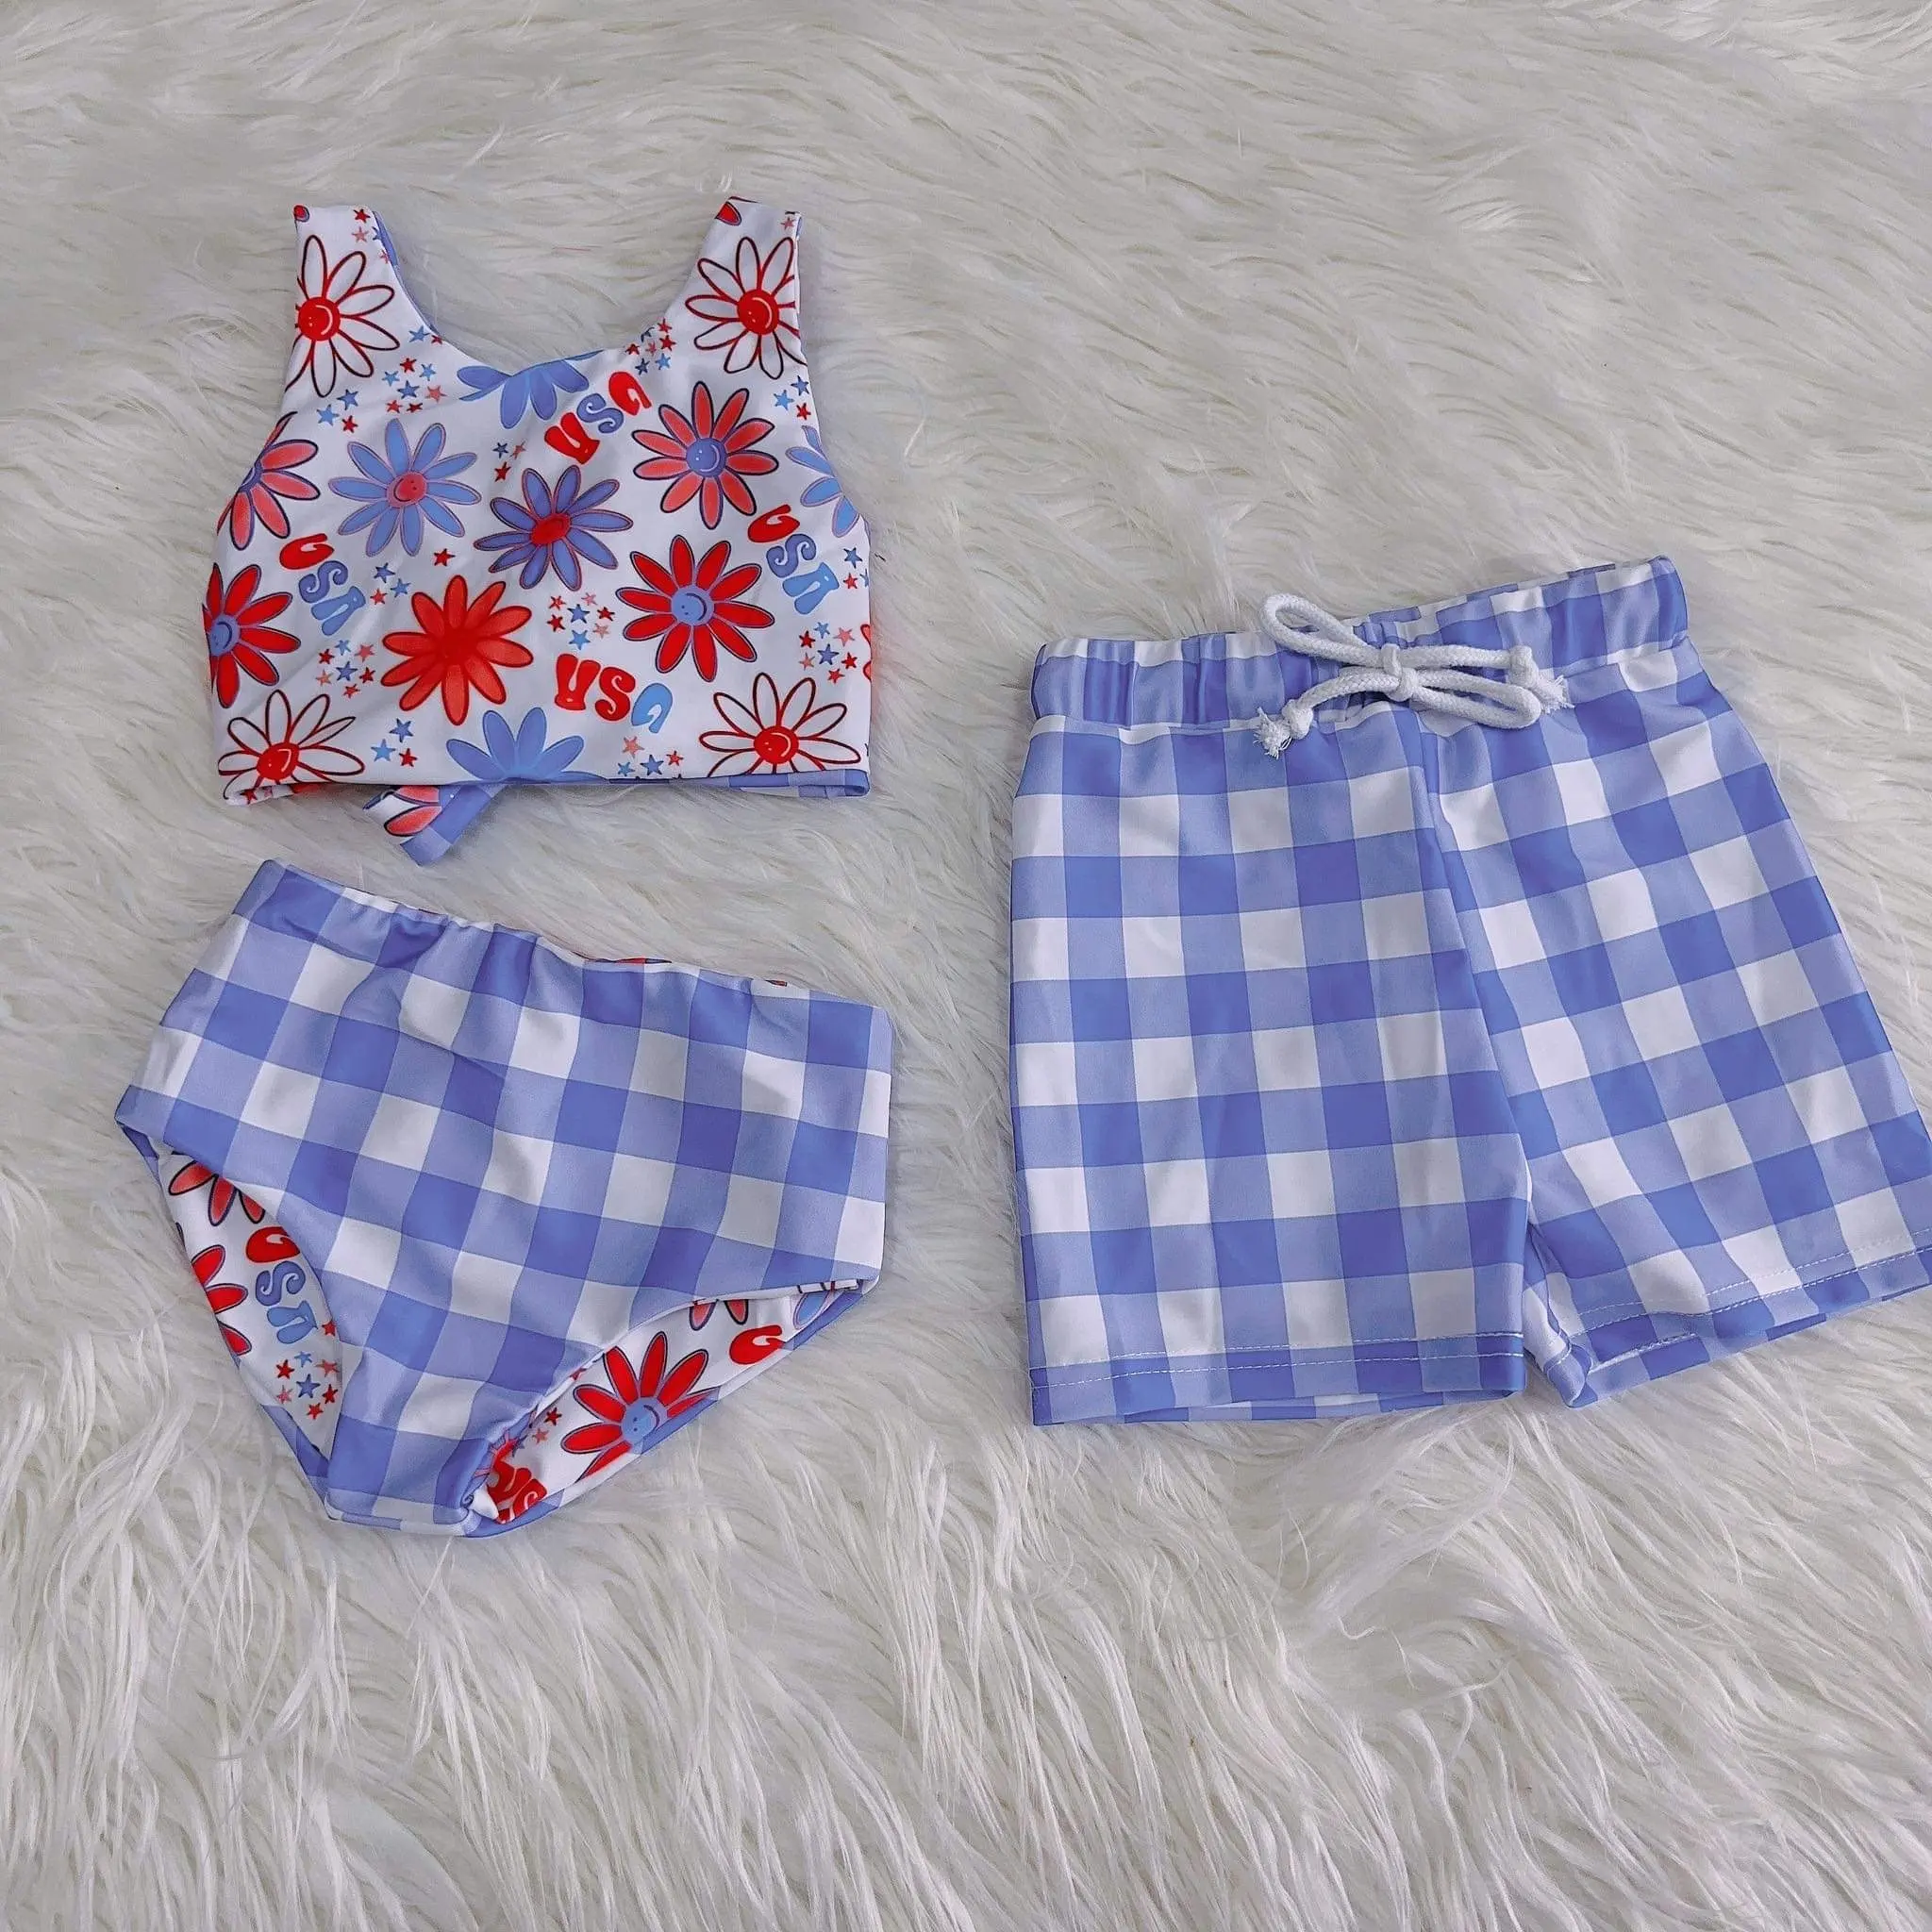 Vente chaude réversible imprimé été deux pièces maillots de bain Bikini ensemble bébé vêtements de natation enfants filles maillots de bain